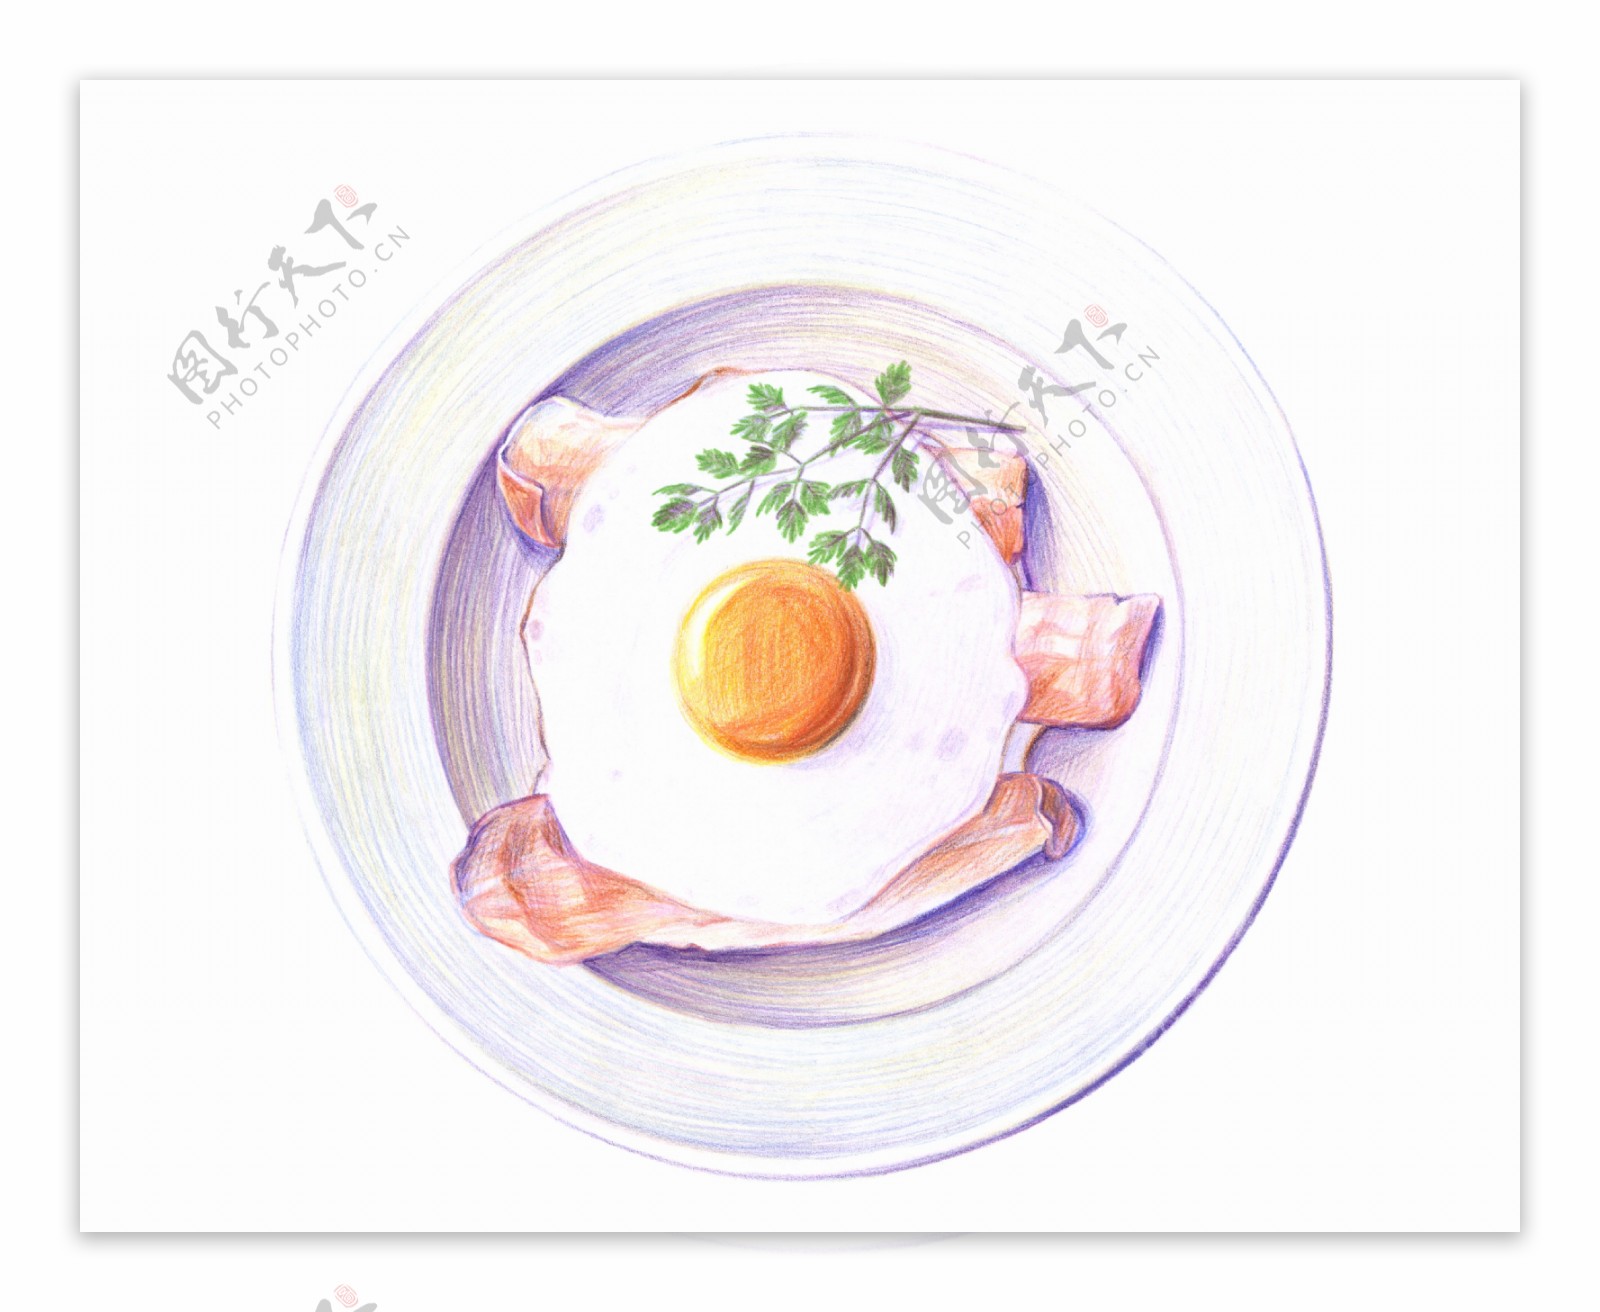 彩铅绘画美食菜谱图片